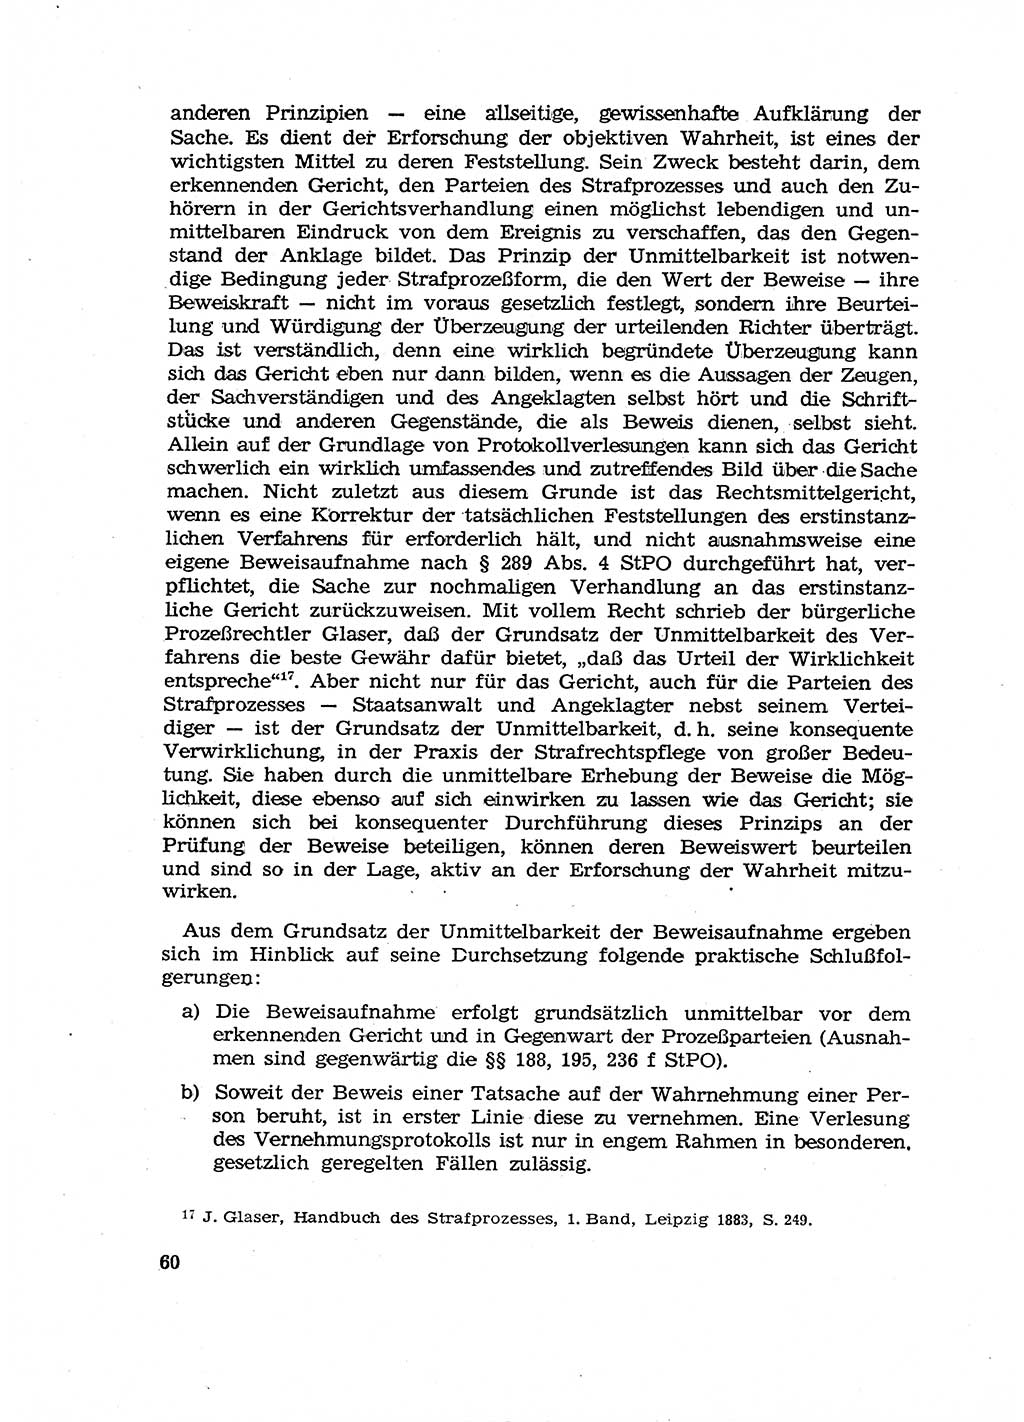 Fragen des Beweisrechts im Strafprozess [Deutsche Demokratische Republik (DDR)] 1956, Seite 60 (Fr. BeweisR. Str.-Proz. DDR 1956, S. 60)